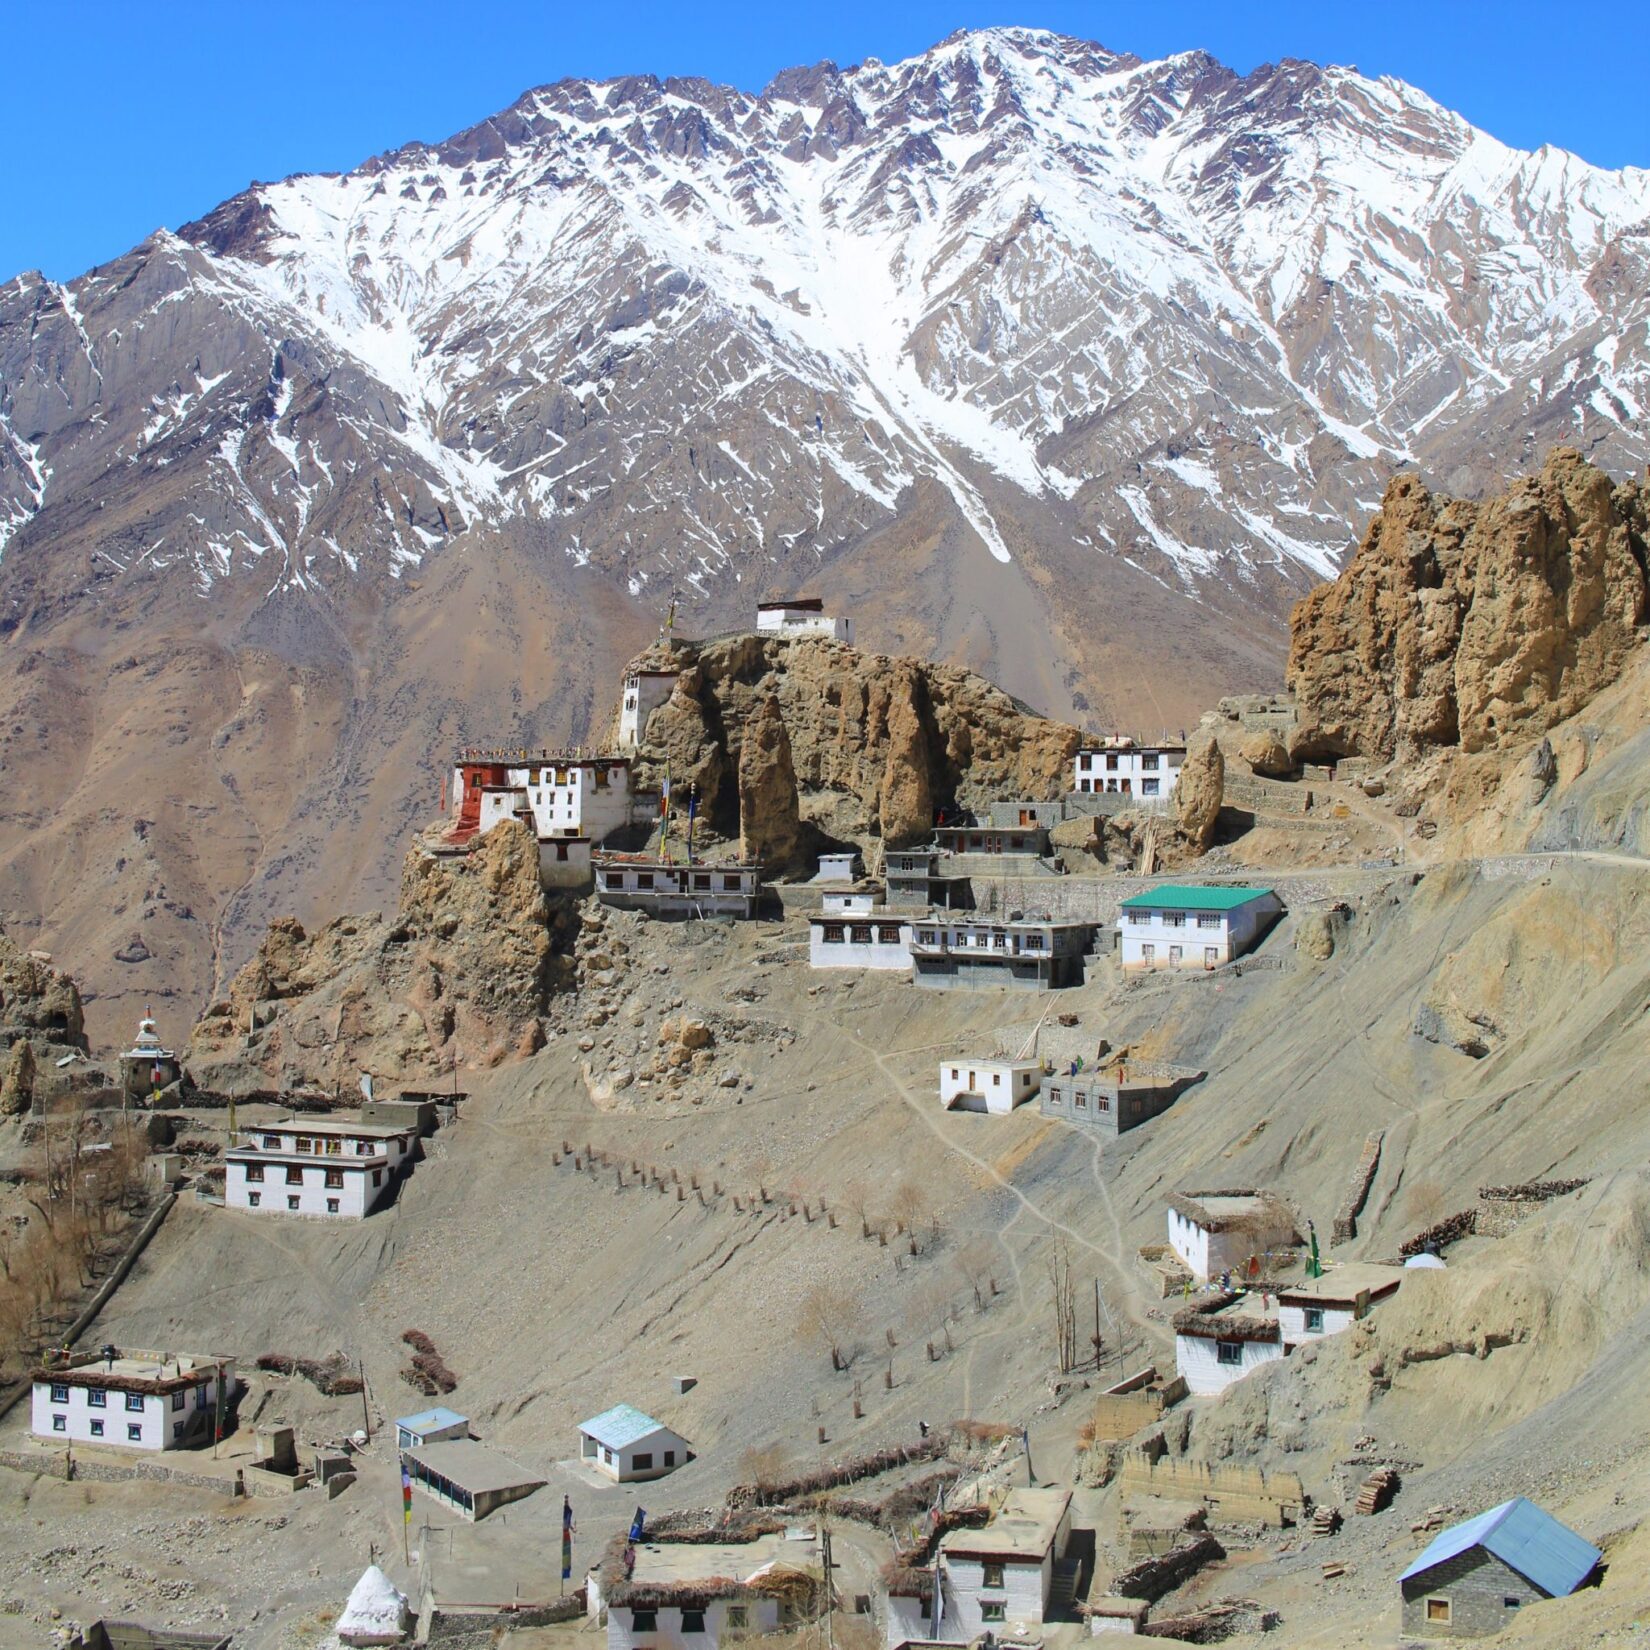 Aldeia de Dhankar no Vale Spiti nos Himalaias Indianos